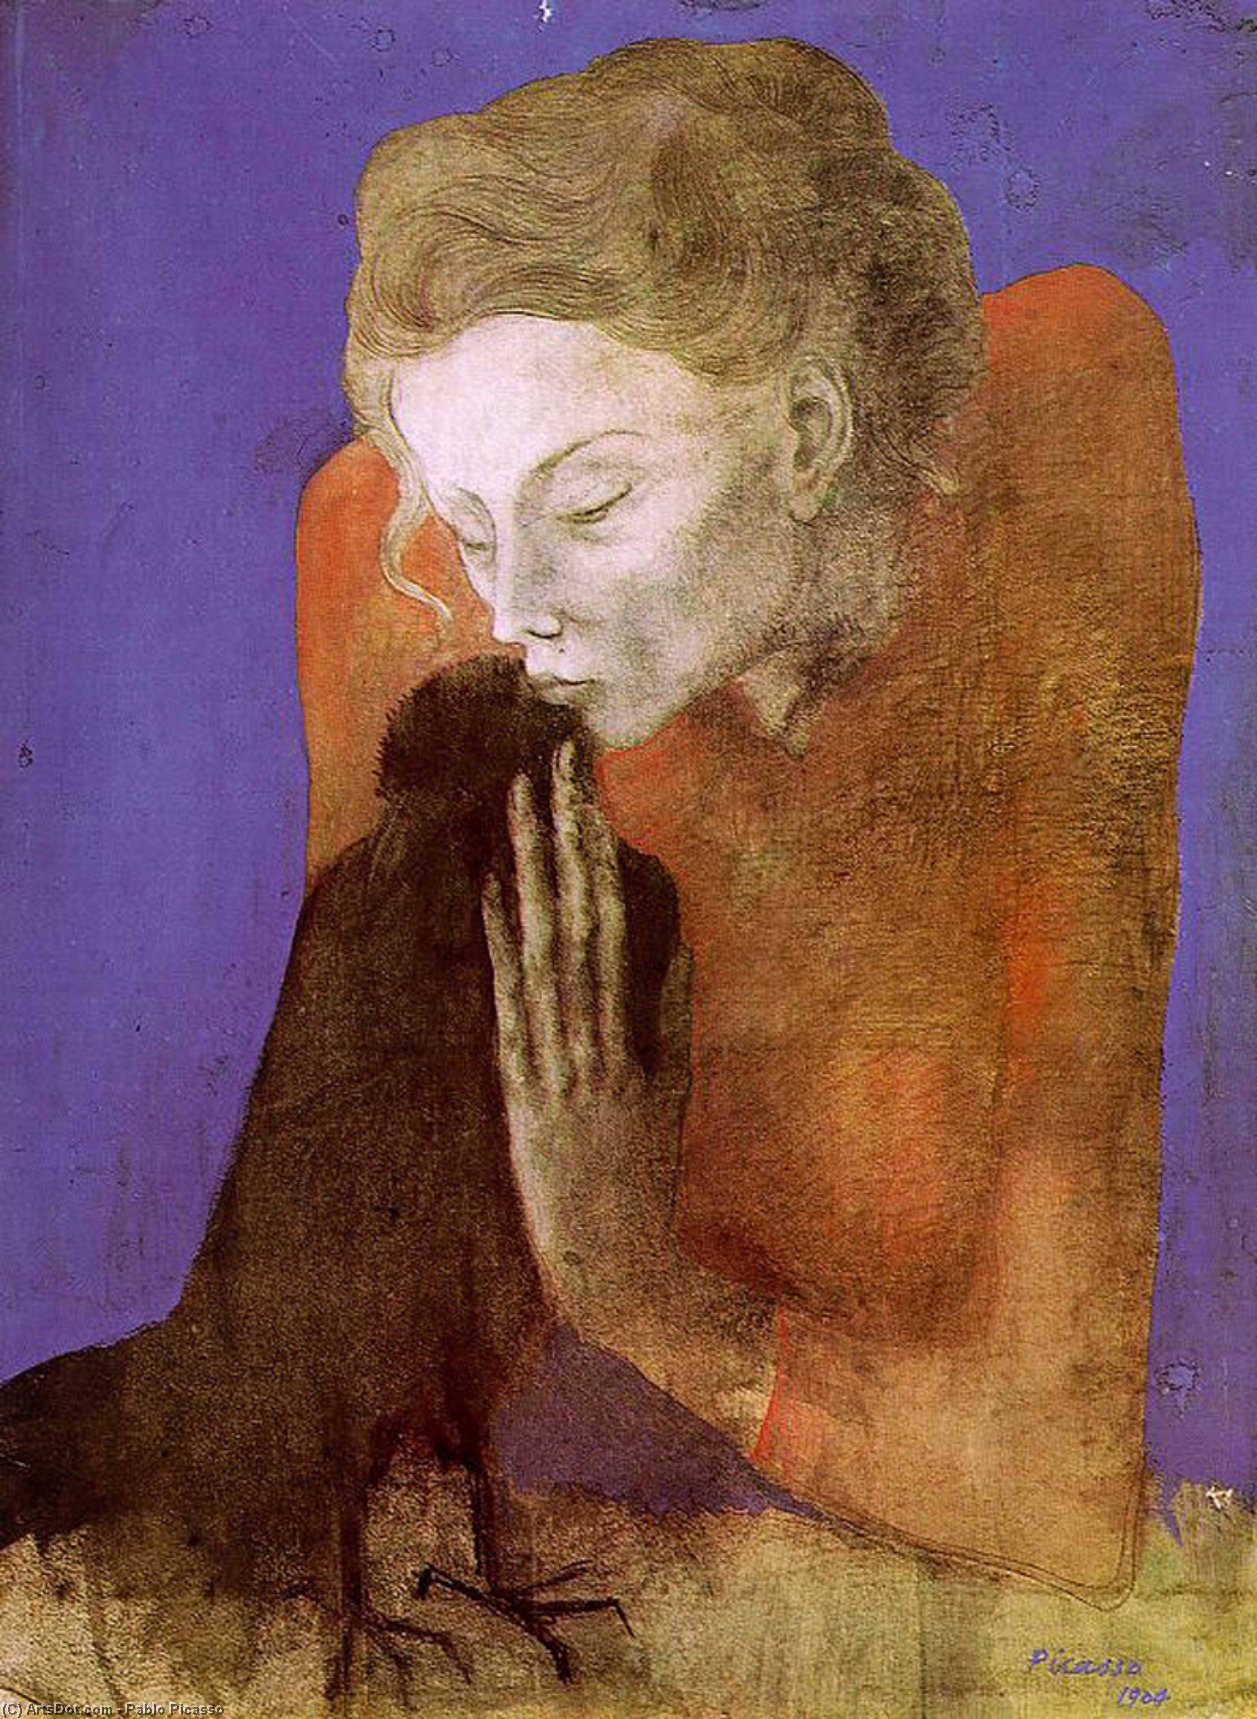 WikiOO.org - אנציקלופדיה לאמנויות יפות - ציור, יצירות אמנות Pablo Picasso - Woman with raven